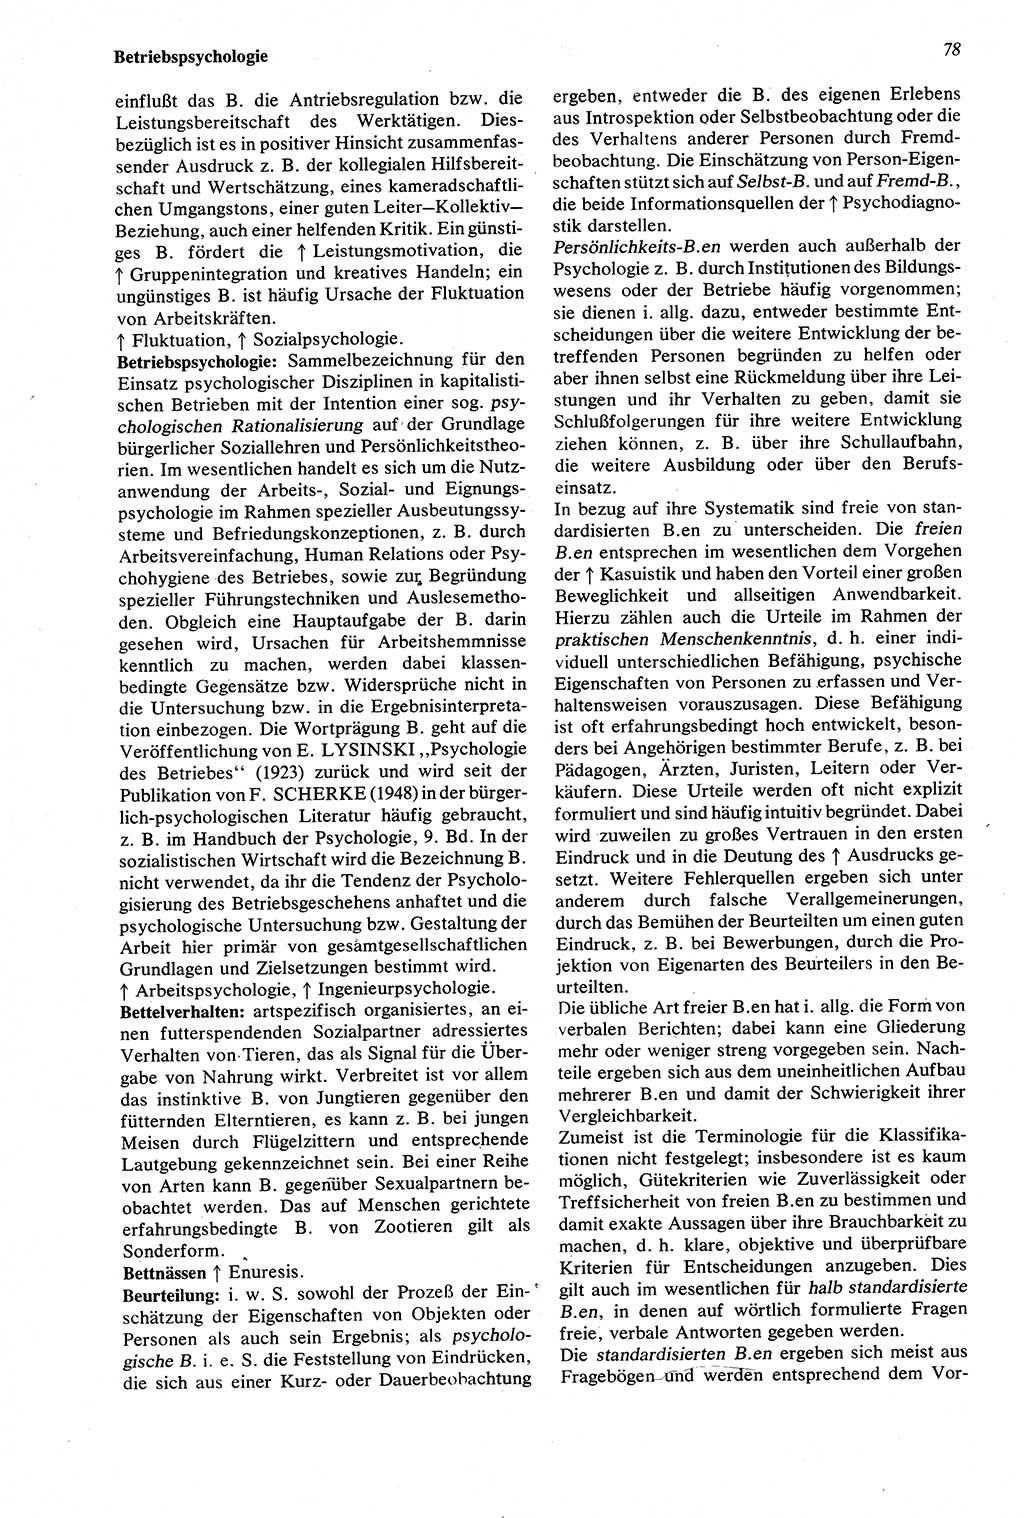 Wörterbuch der Psychologie [Deutsche Demokratische Republik (DDR)] 1976, Seite 78 (Wb. Psych. DDR 1976, S. 78)